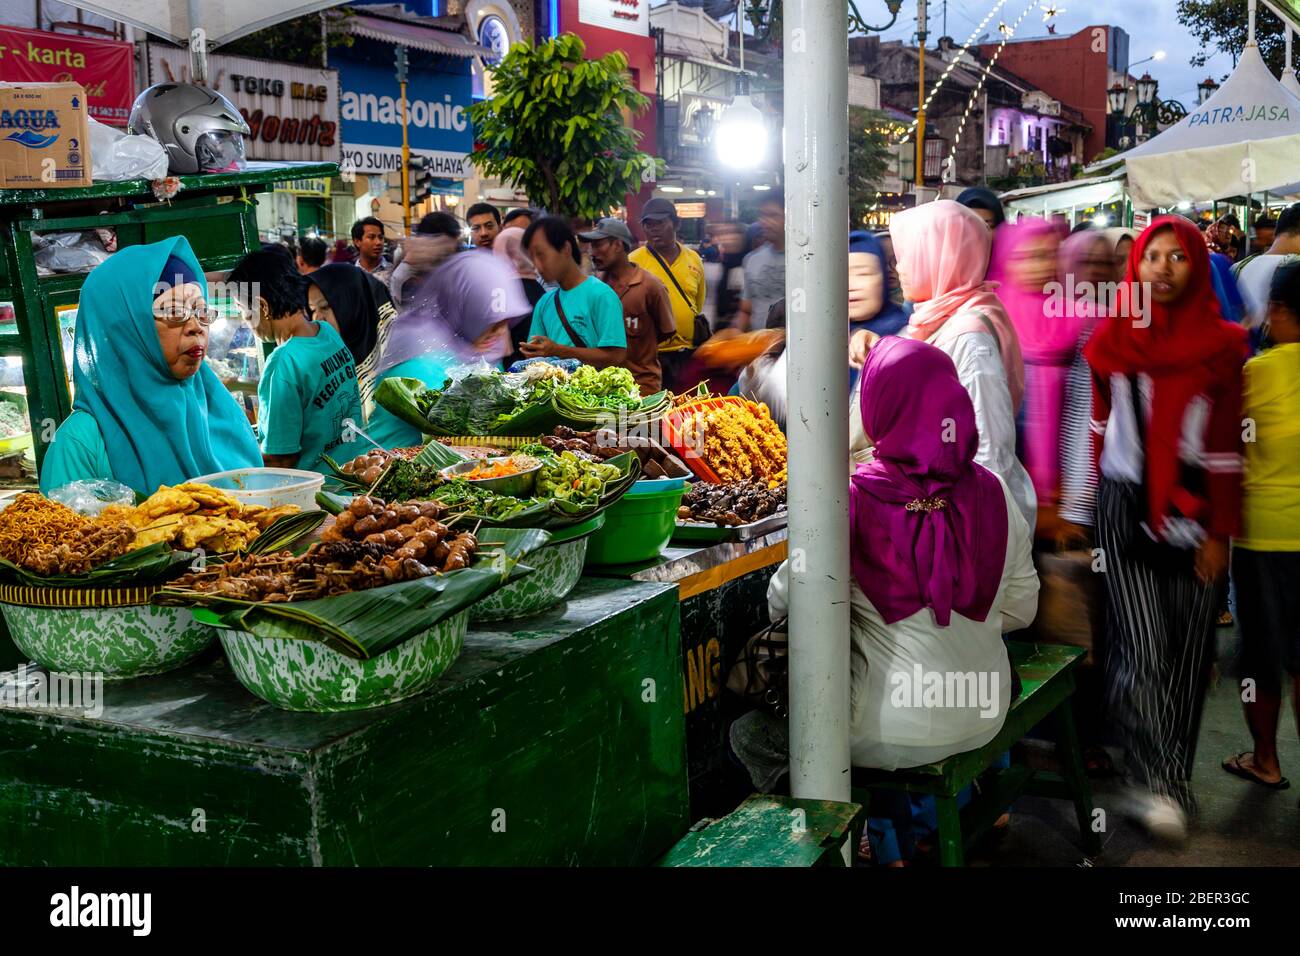 Un quartier animé de la rue, rue colorée, marché nocturne, rue Malioboro, Yogyakarta, Indonésie. Banque D'Images